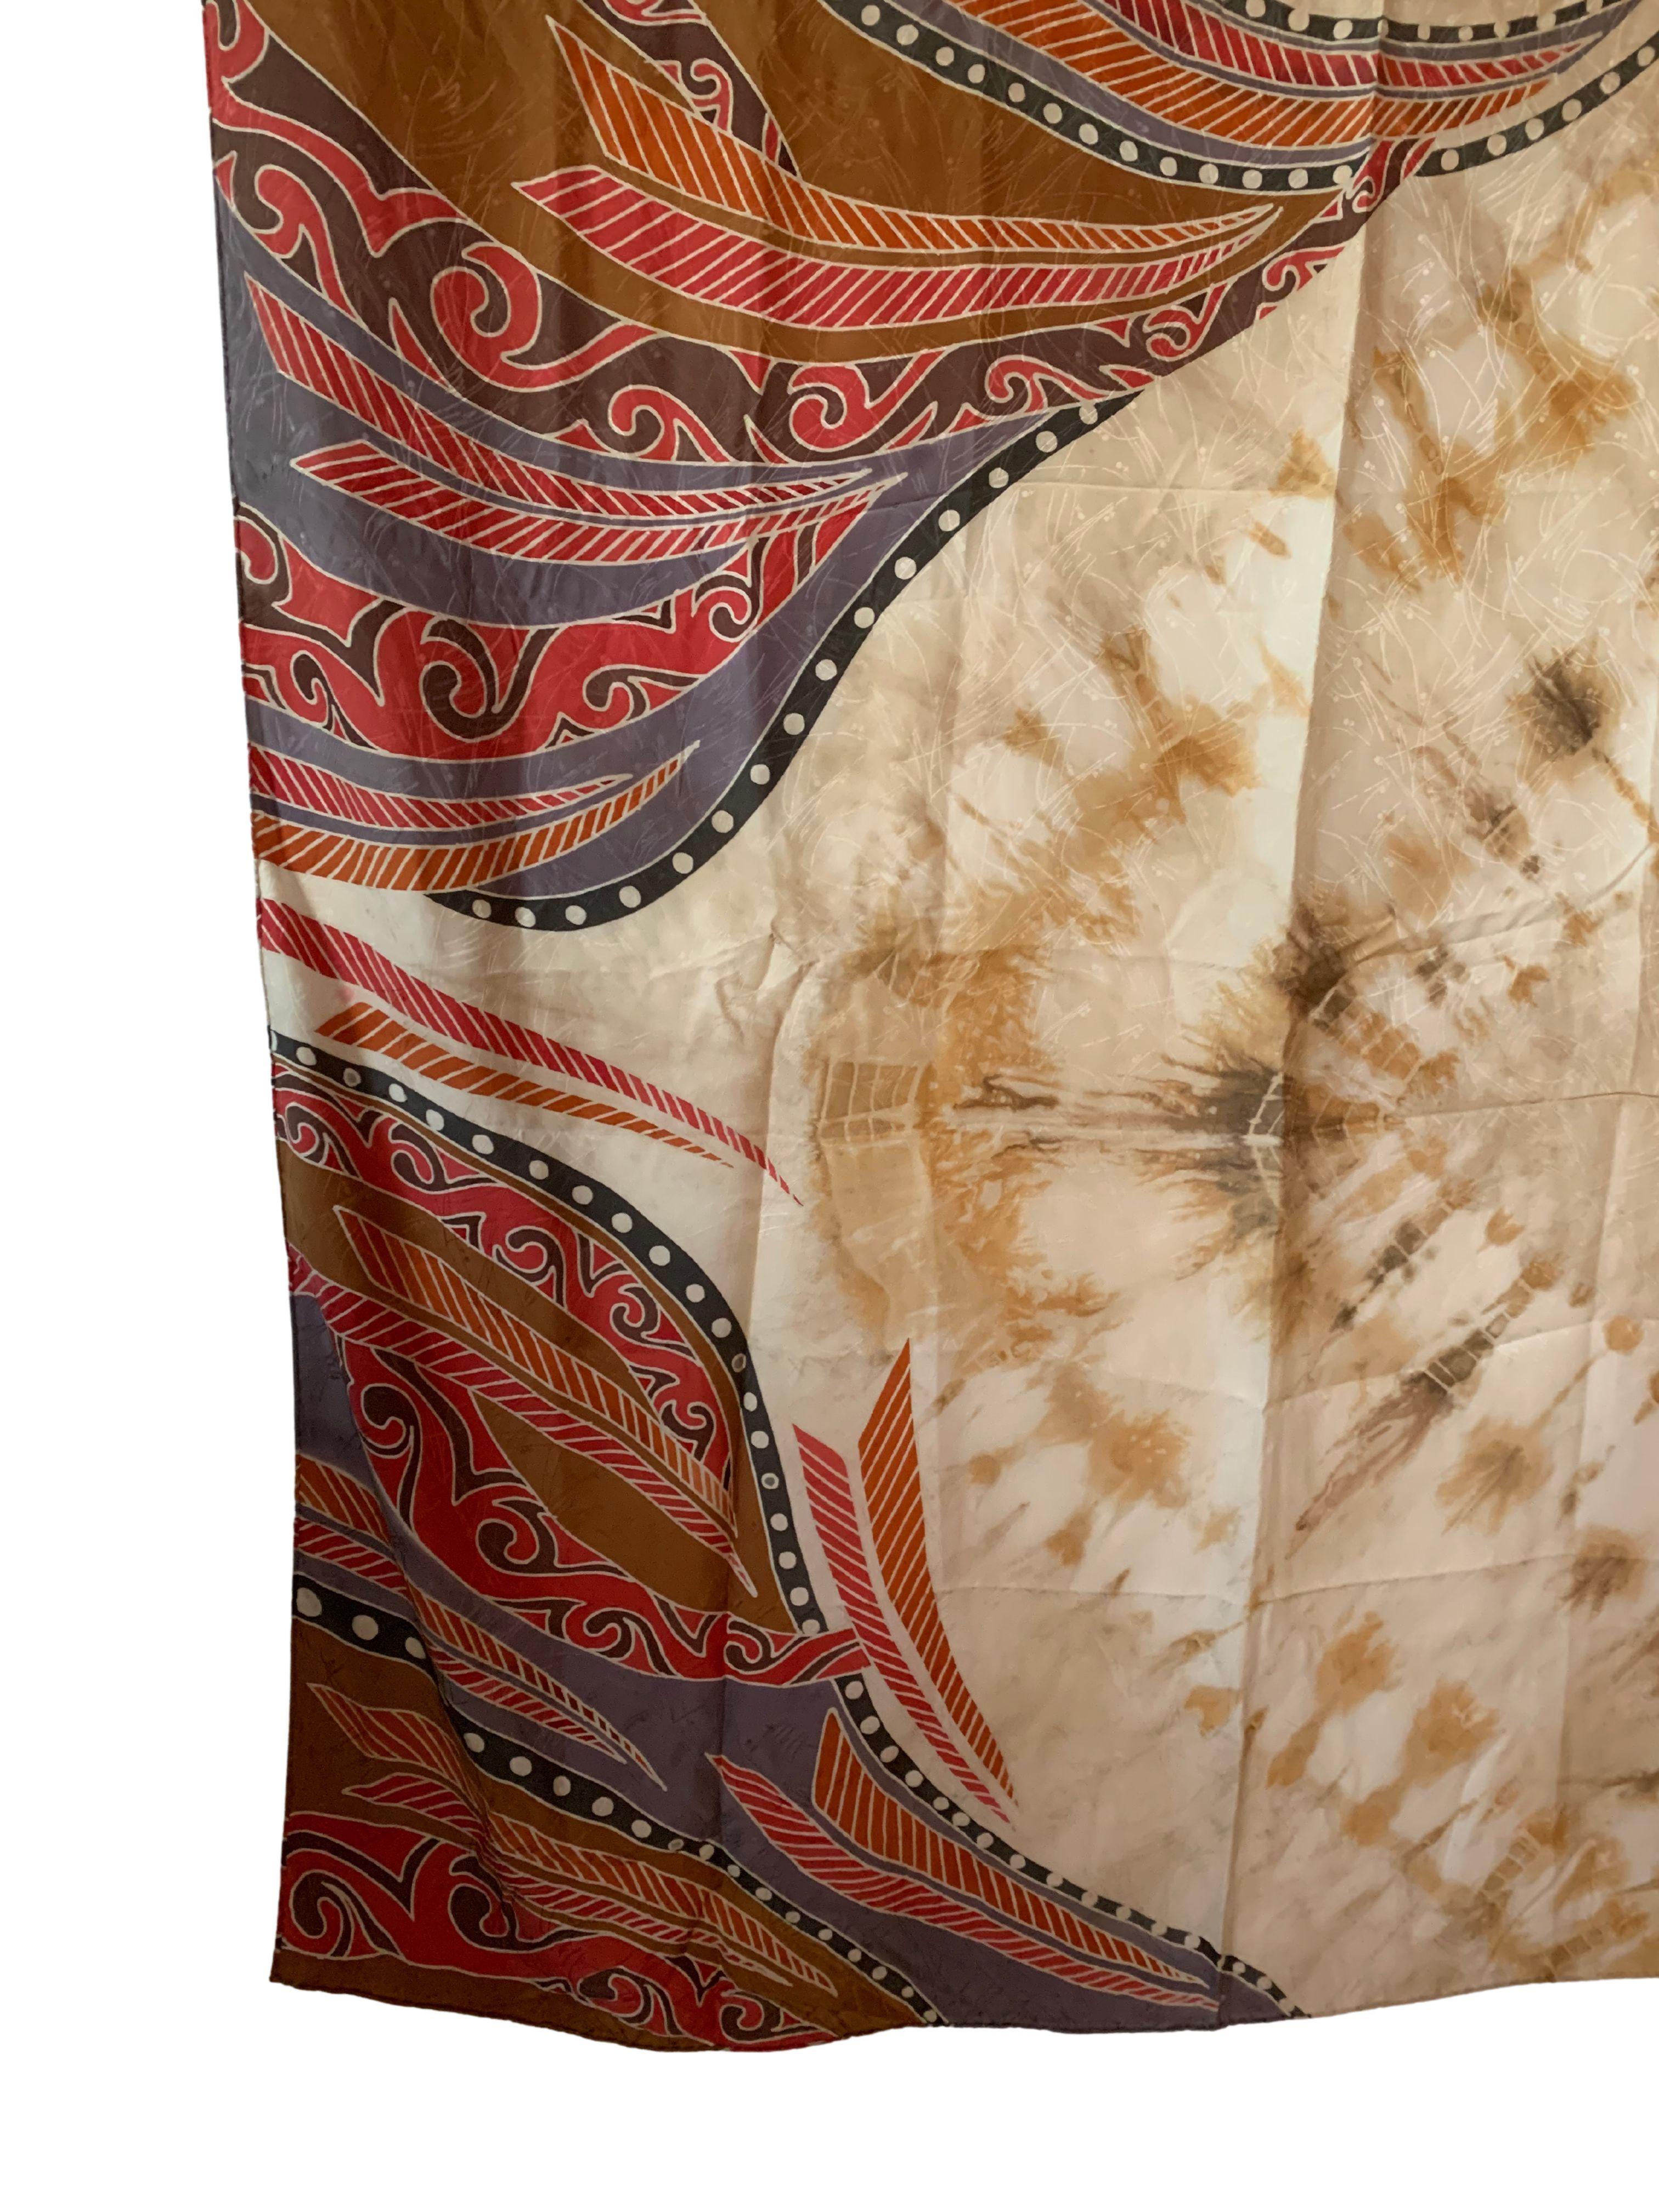 Ein wunderschönes handgefertigtes Shantung-Seidentextil aus Malaysia mit atemberaubenden Details und Schattierungen. Shantung-Seide ist ein mittelschweres Seidengewebe in Leinwandbindung, das aus unregelmäßigen Fäden gewebt wird und daher eine raue